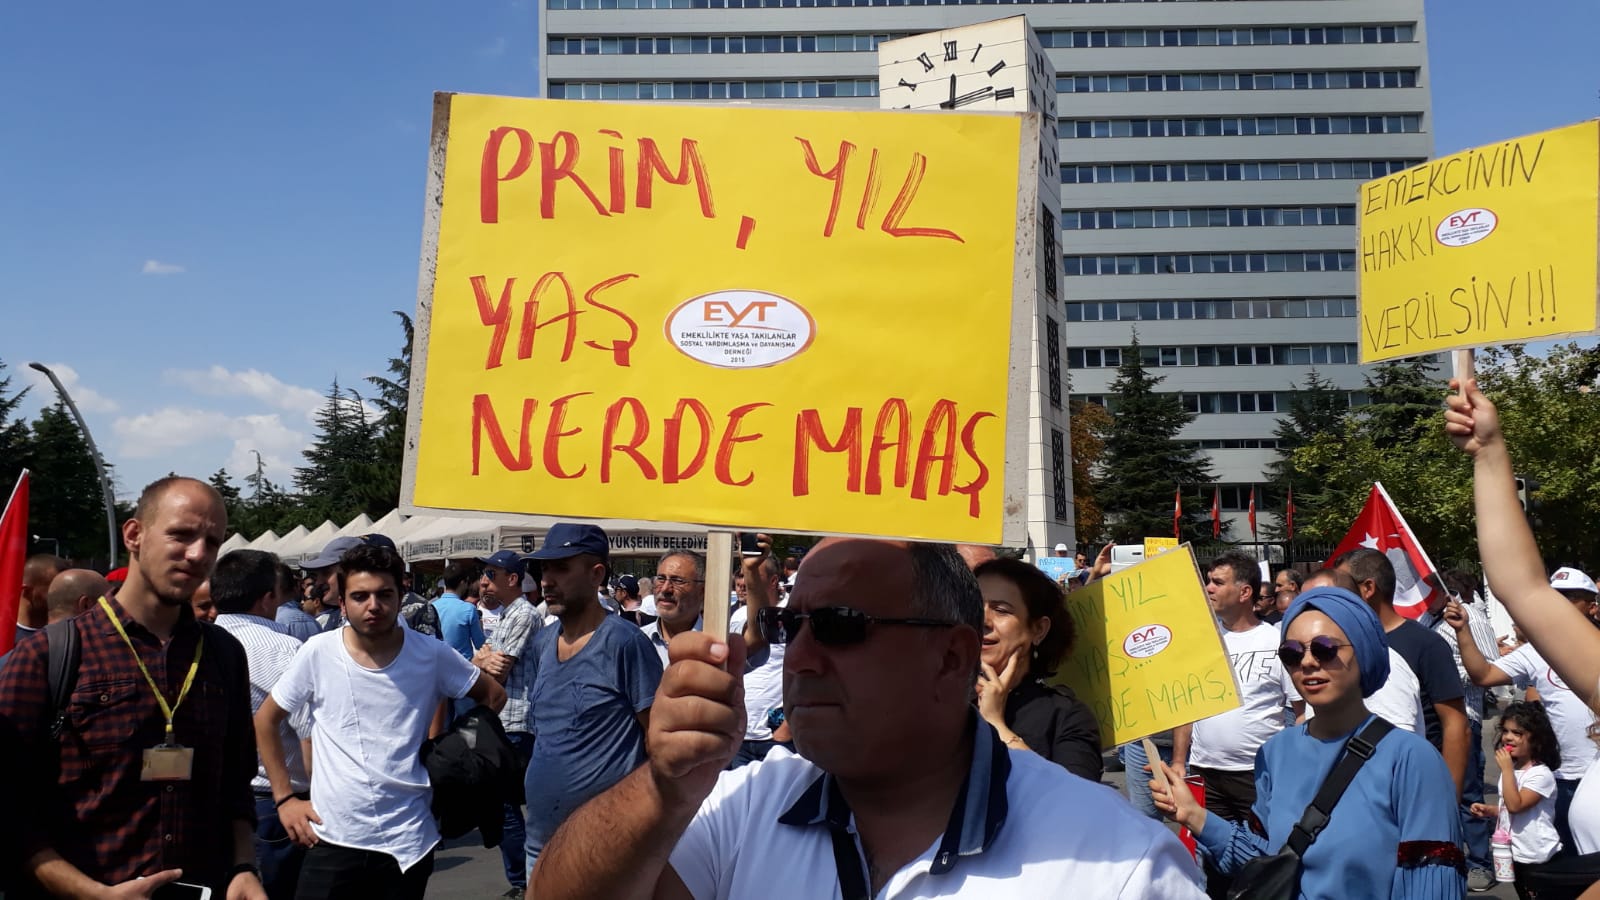 Binlerce EYT'li, yirminci yılda Tandoğan'da: "Alın terinin karşılığı olan haklarımızı istiyoruz"